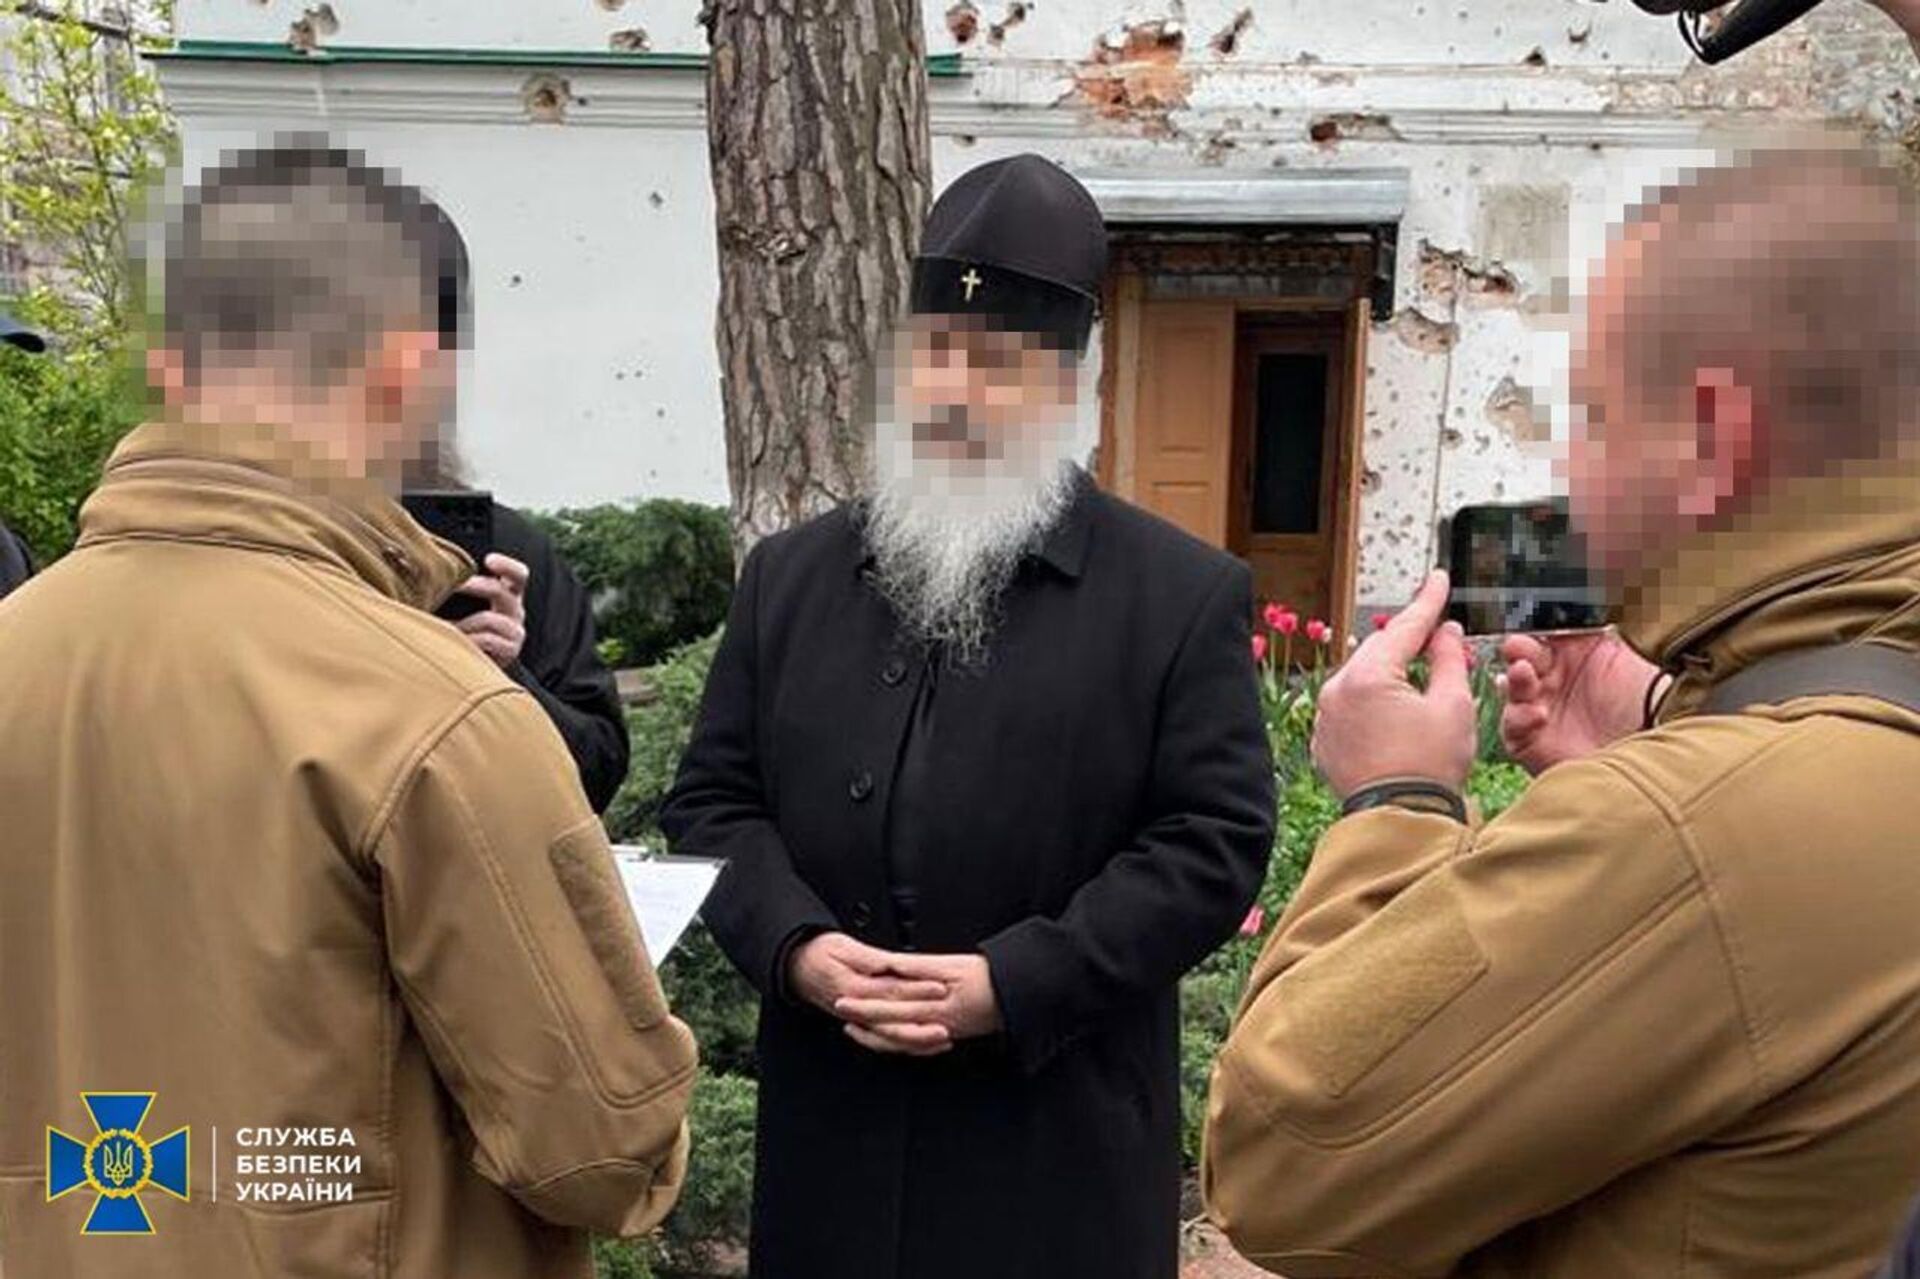 СБУ в Донецкой области задержала митрополита Святогорской лавры3